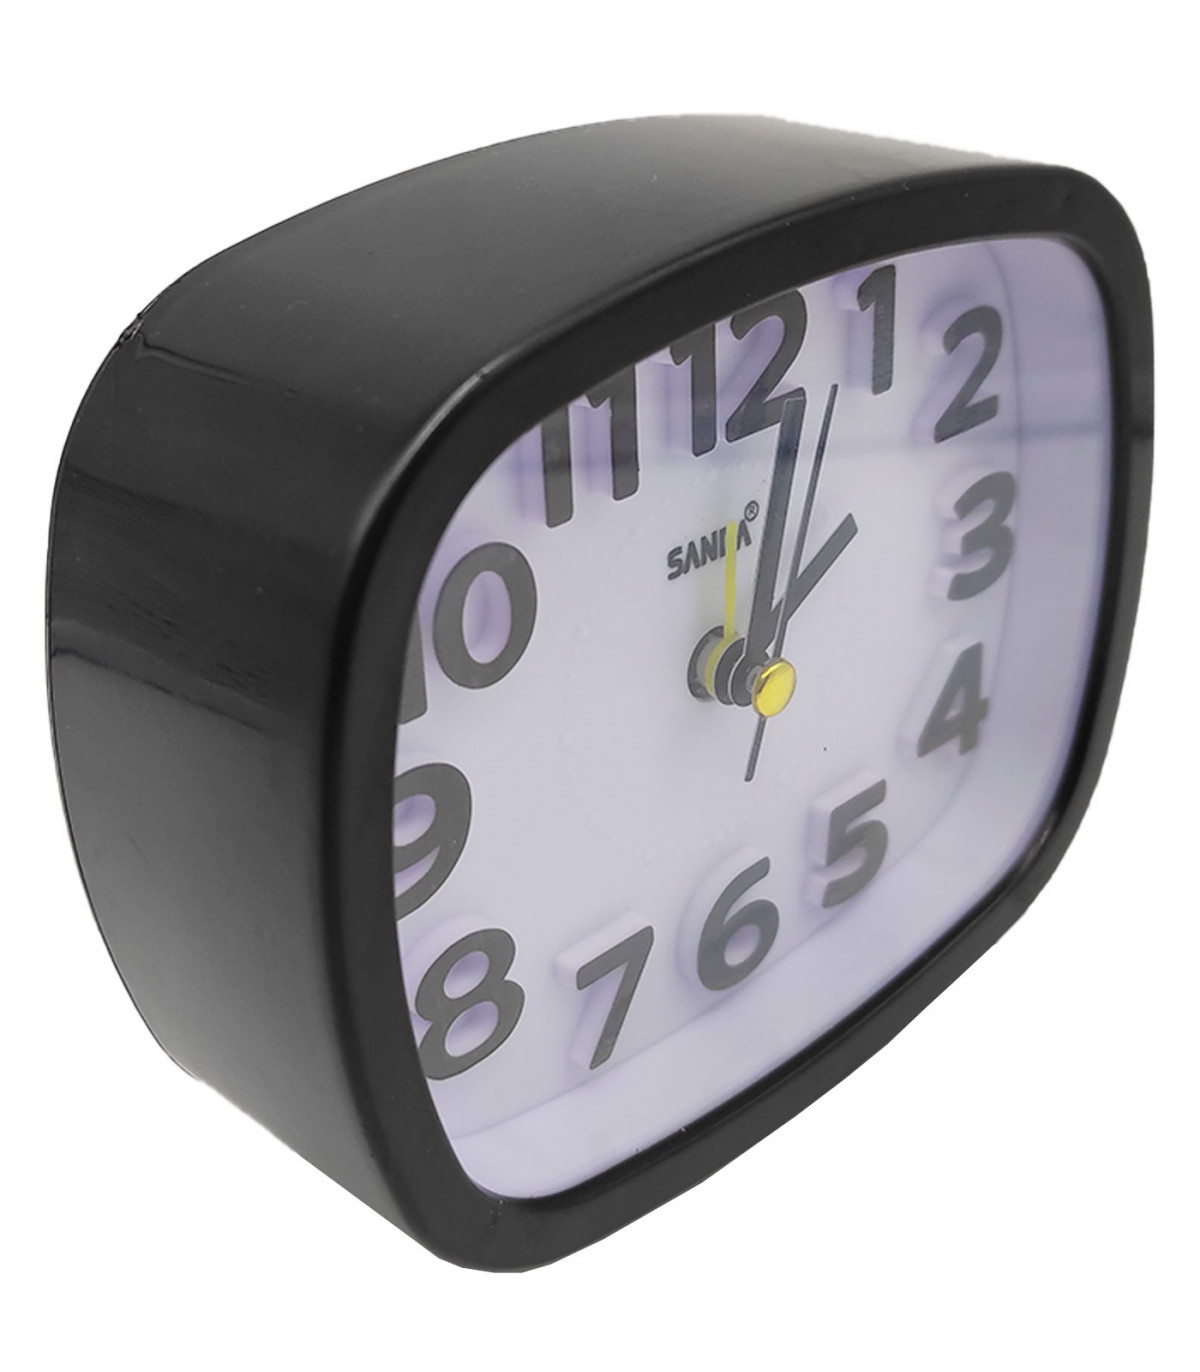 Reloj despertador silencioso con luz y alarma, plástico, función snooze,  funcionamiento con pila, 10 x 11,6 x 3,9 cm, color alea